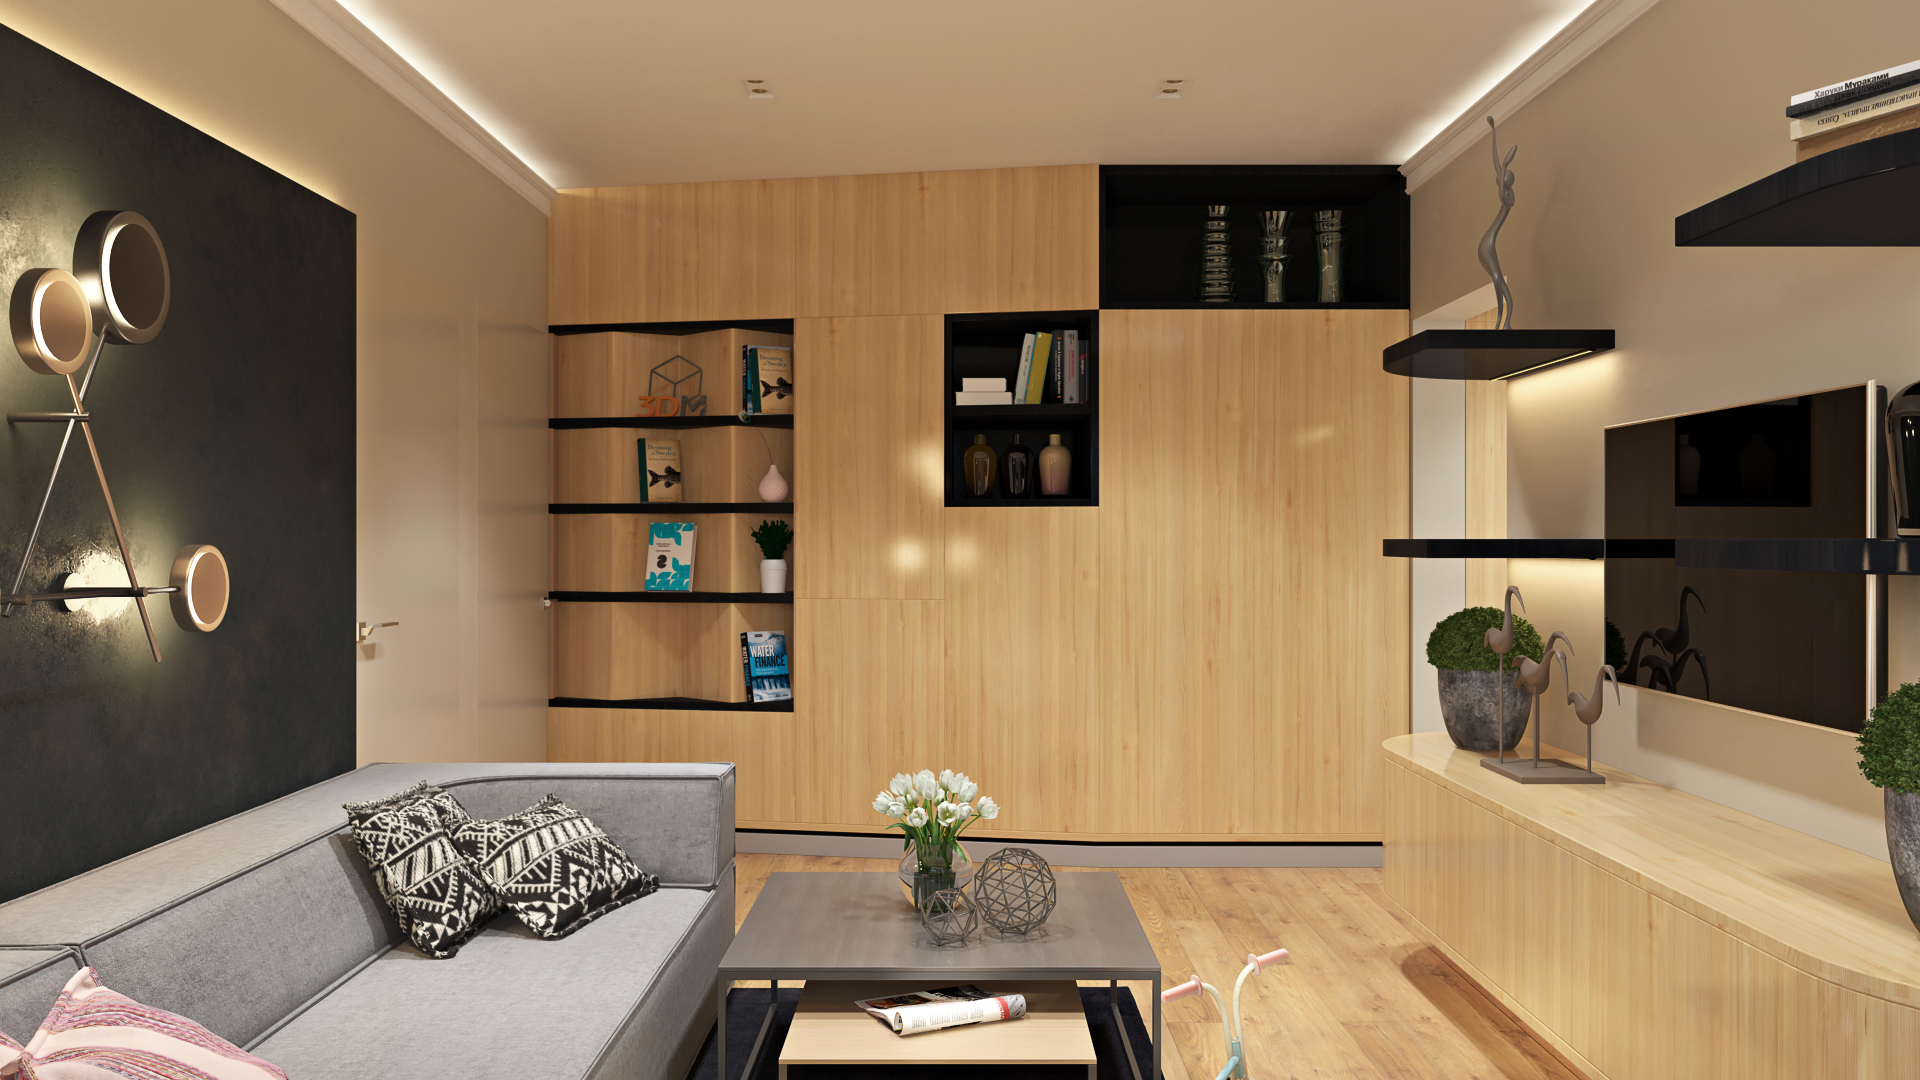 Планировка п44 (квартиры): типовые проекты и советы по организации места в квартире (85 фото)